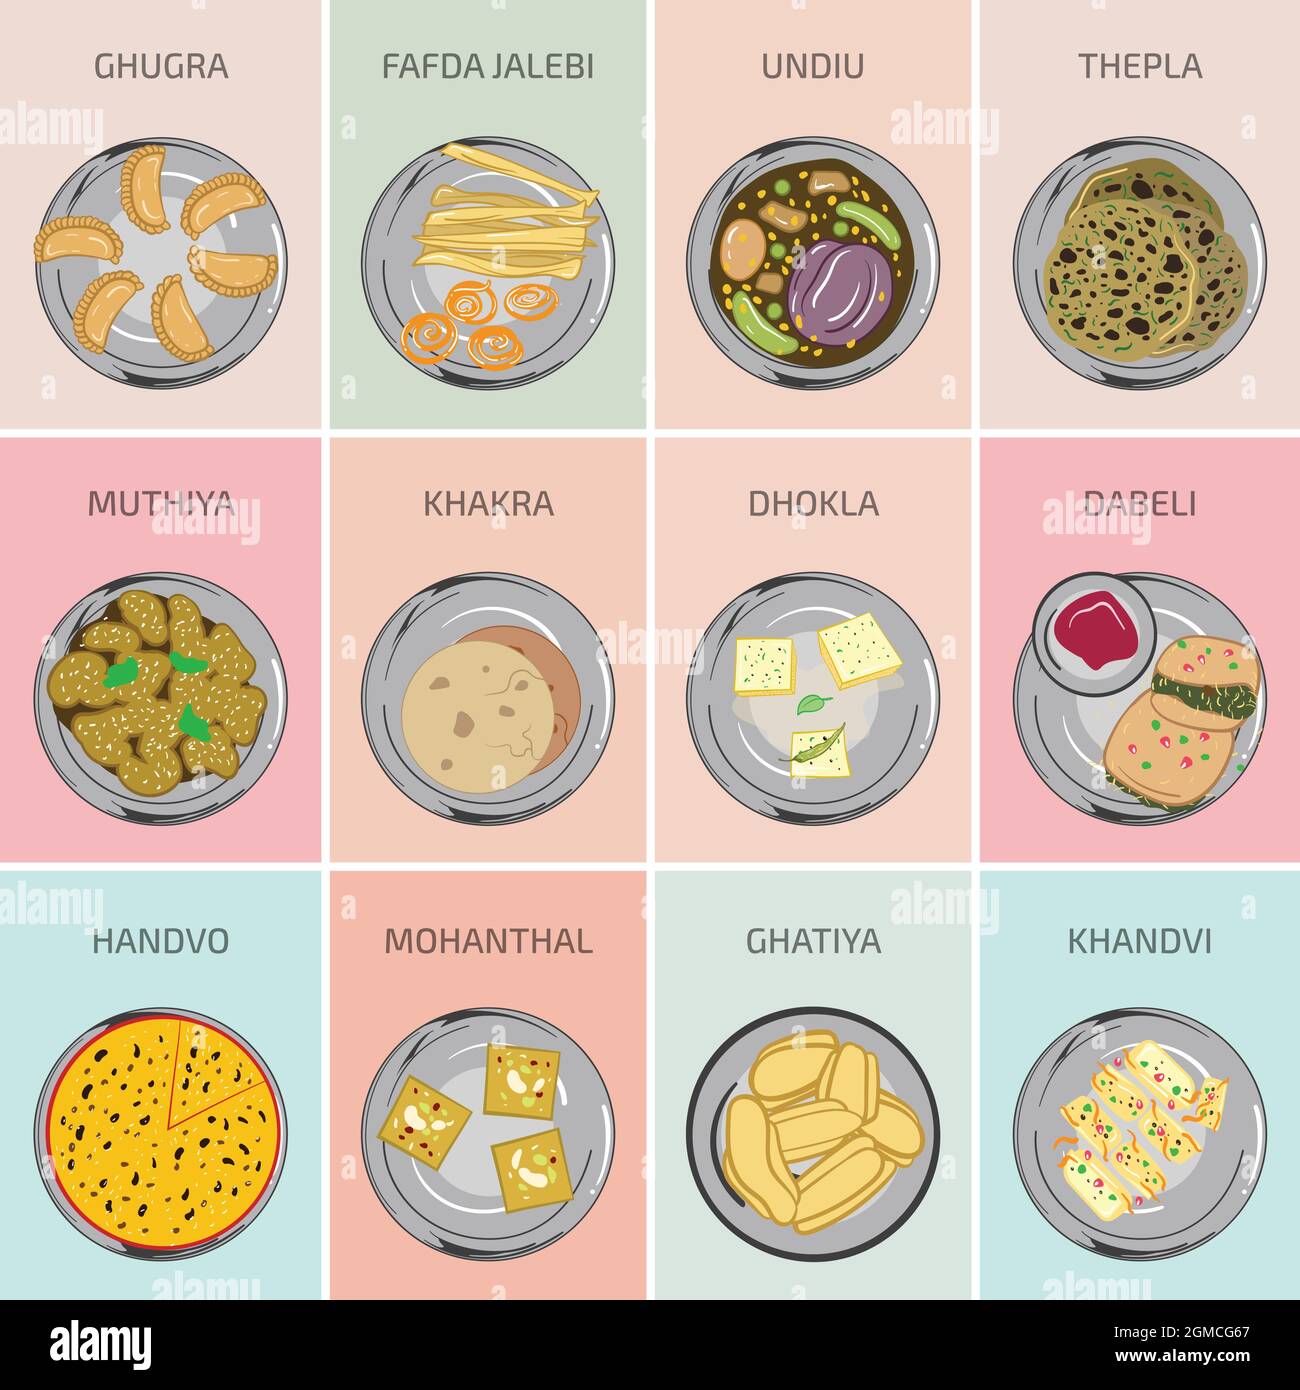 Indische Lebensmittel Vektorgrafiken. Gujrati Gujrat Essen. Hauptgericht Frühstück, Mittag- und Abendessen in Indien. Dhokla Khakra Khandvi Muthiya Mohanthal Undiu Stock Vektor